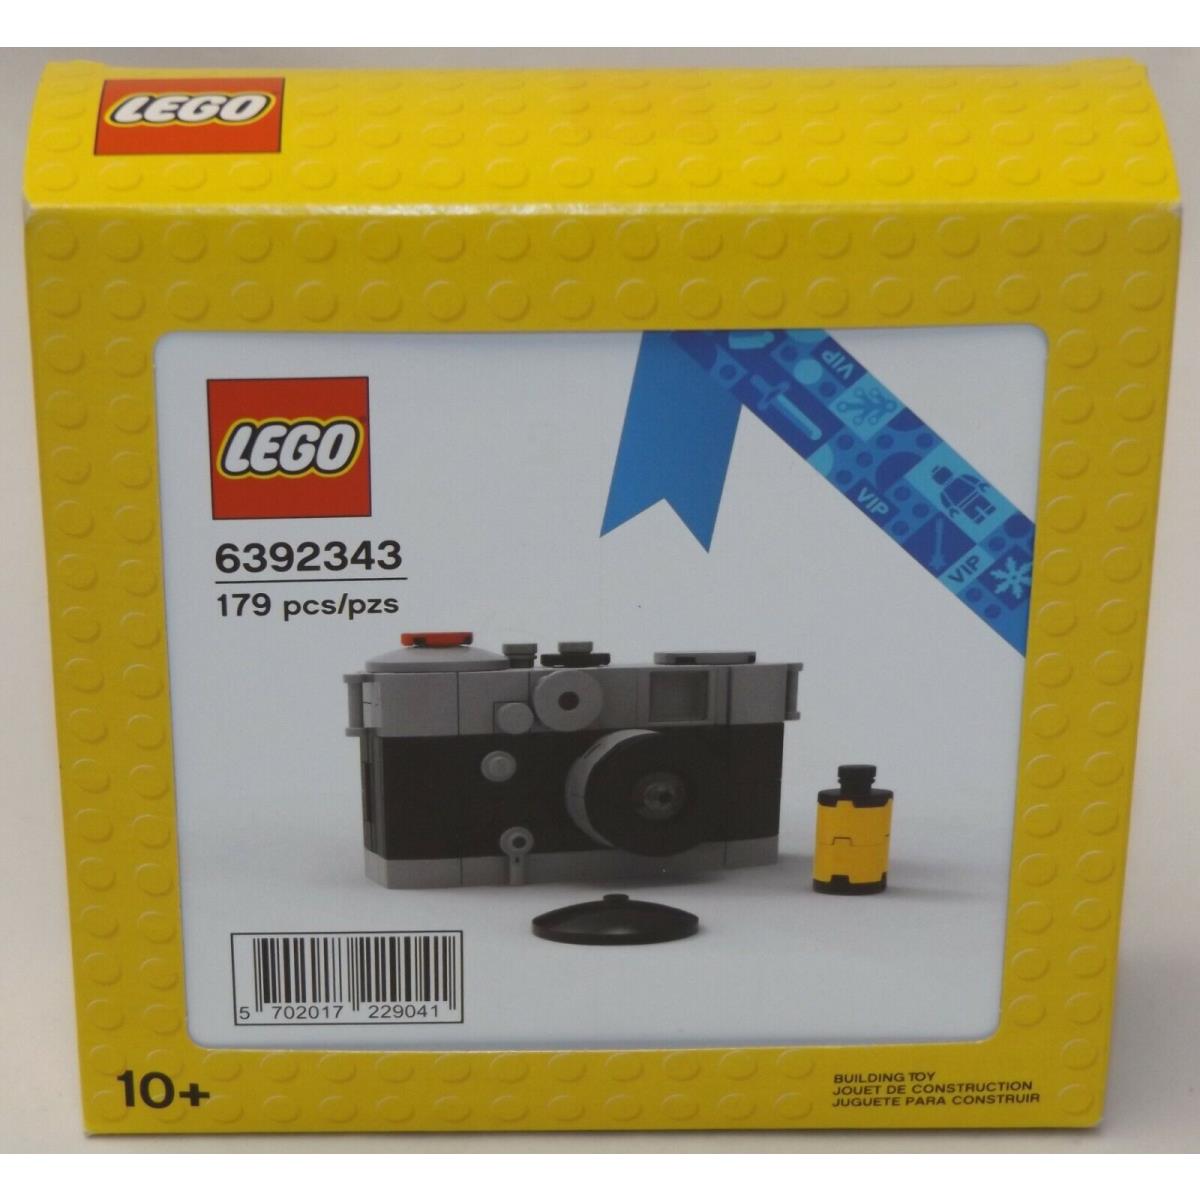 Lego 6392343 Vintage Camera 2021 Store Exclusive